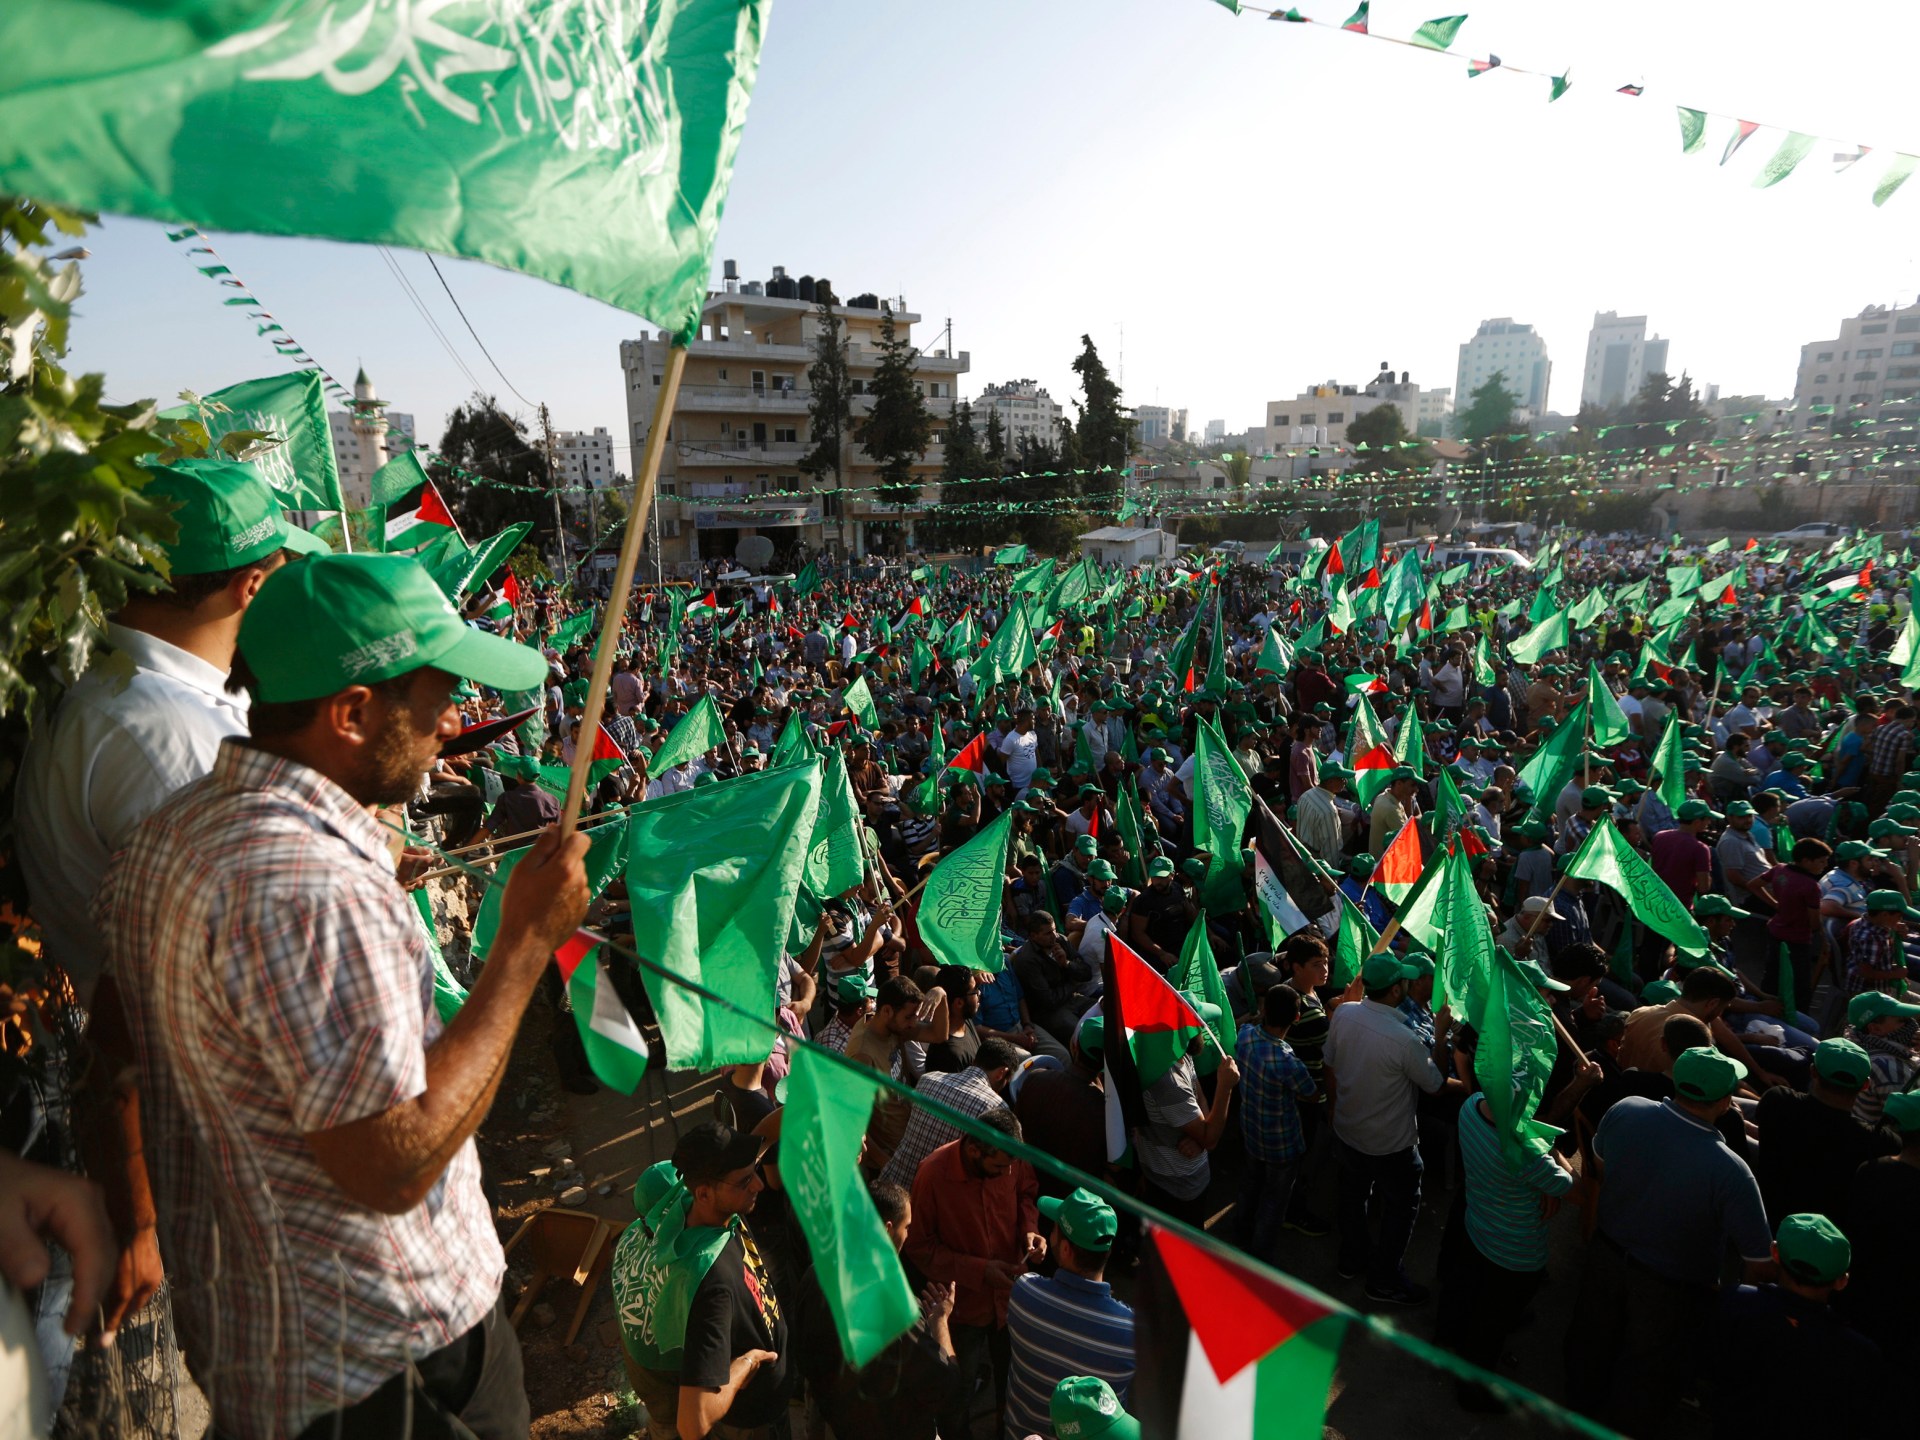 الاتحاد الأوروبي يتجه لفرض عقوبات على حماس | أخبار – البوكس نيوز